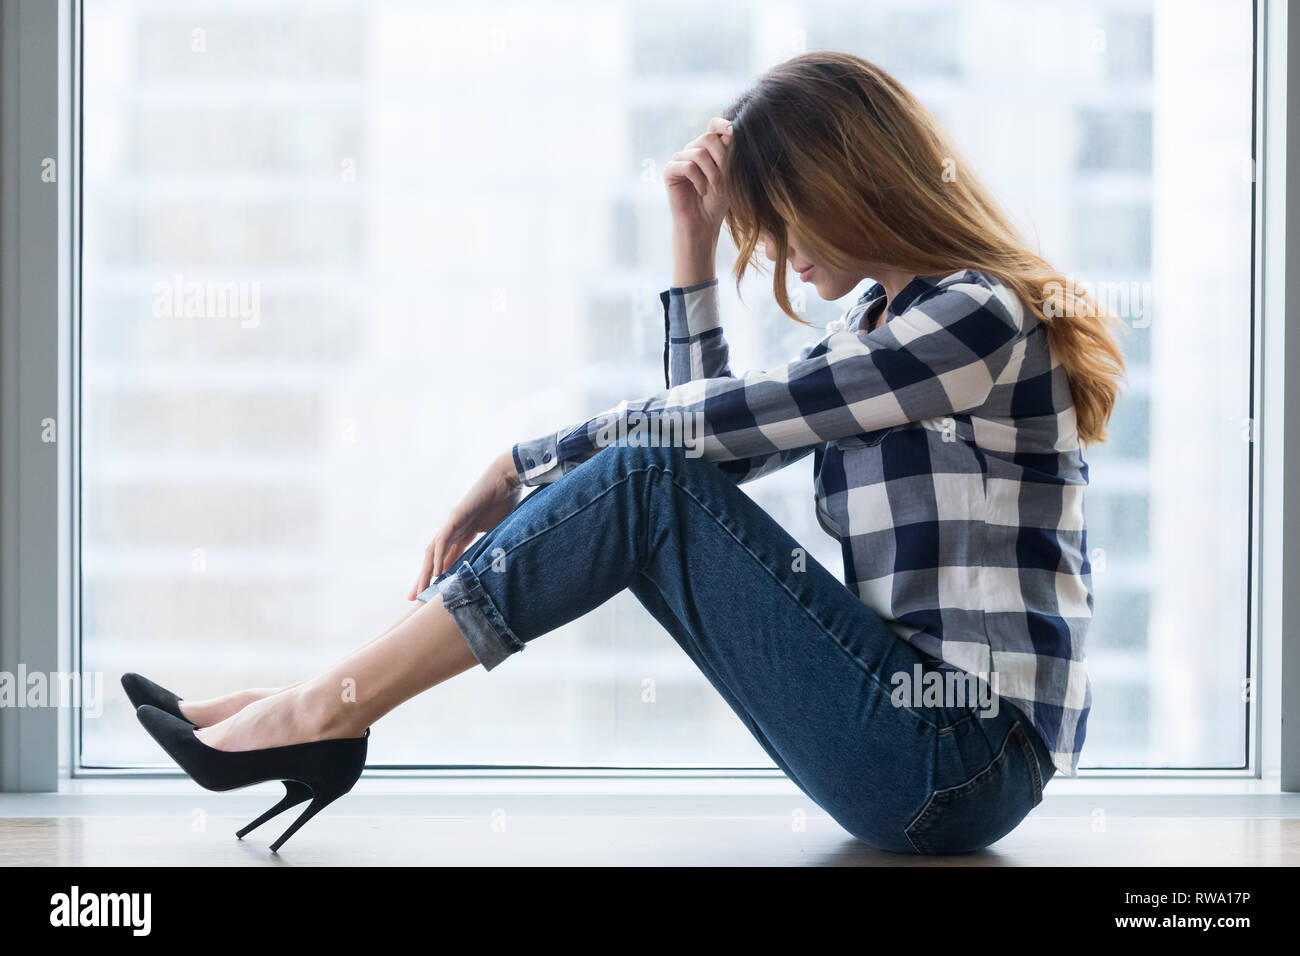 Jeune femme vulnérable déprimés en difficulté seul sitting on floor Banque D'Images